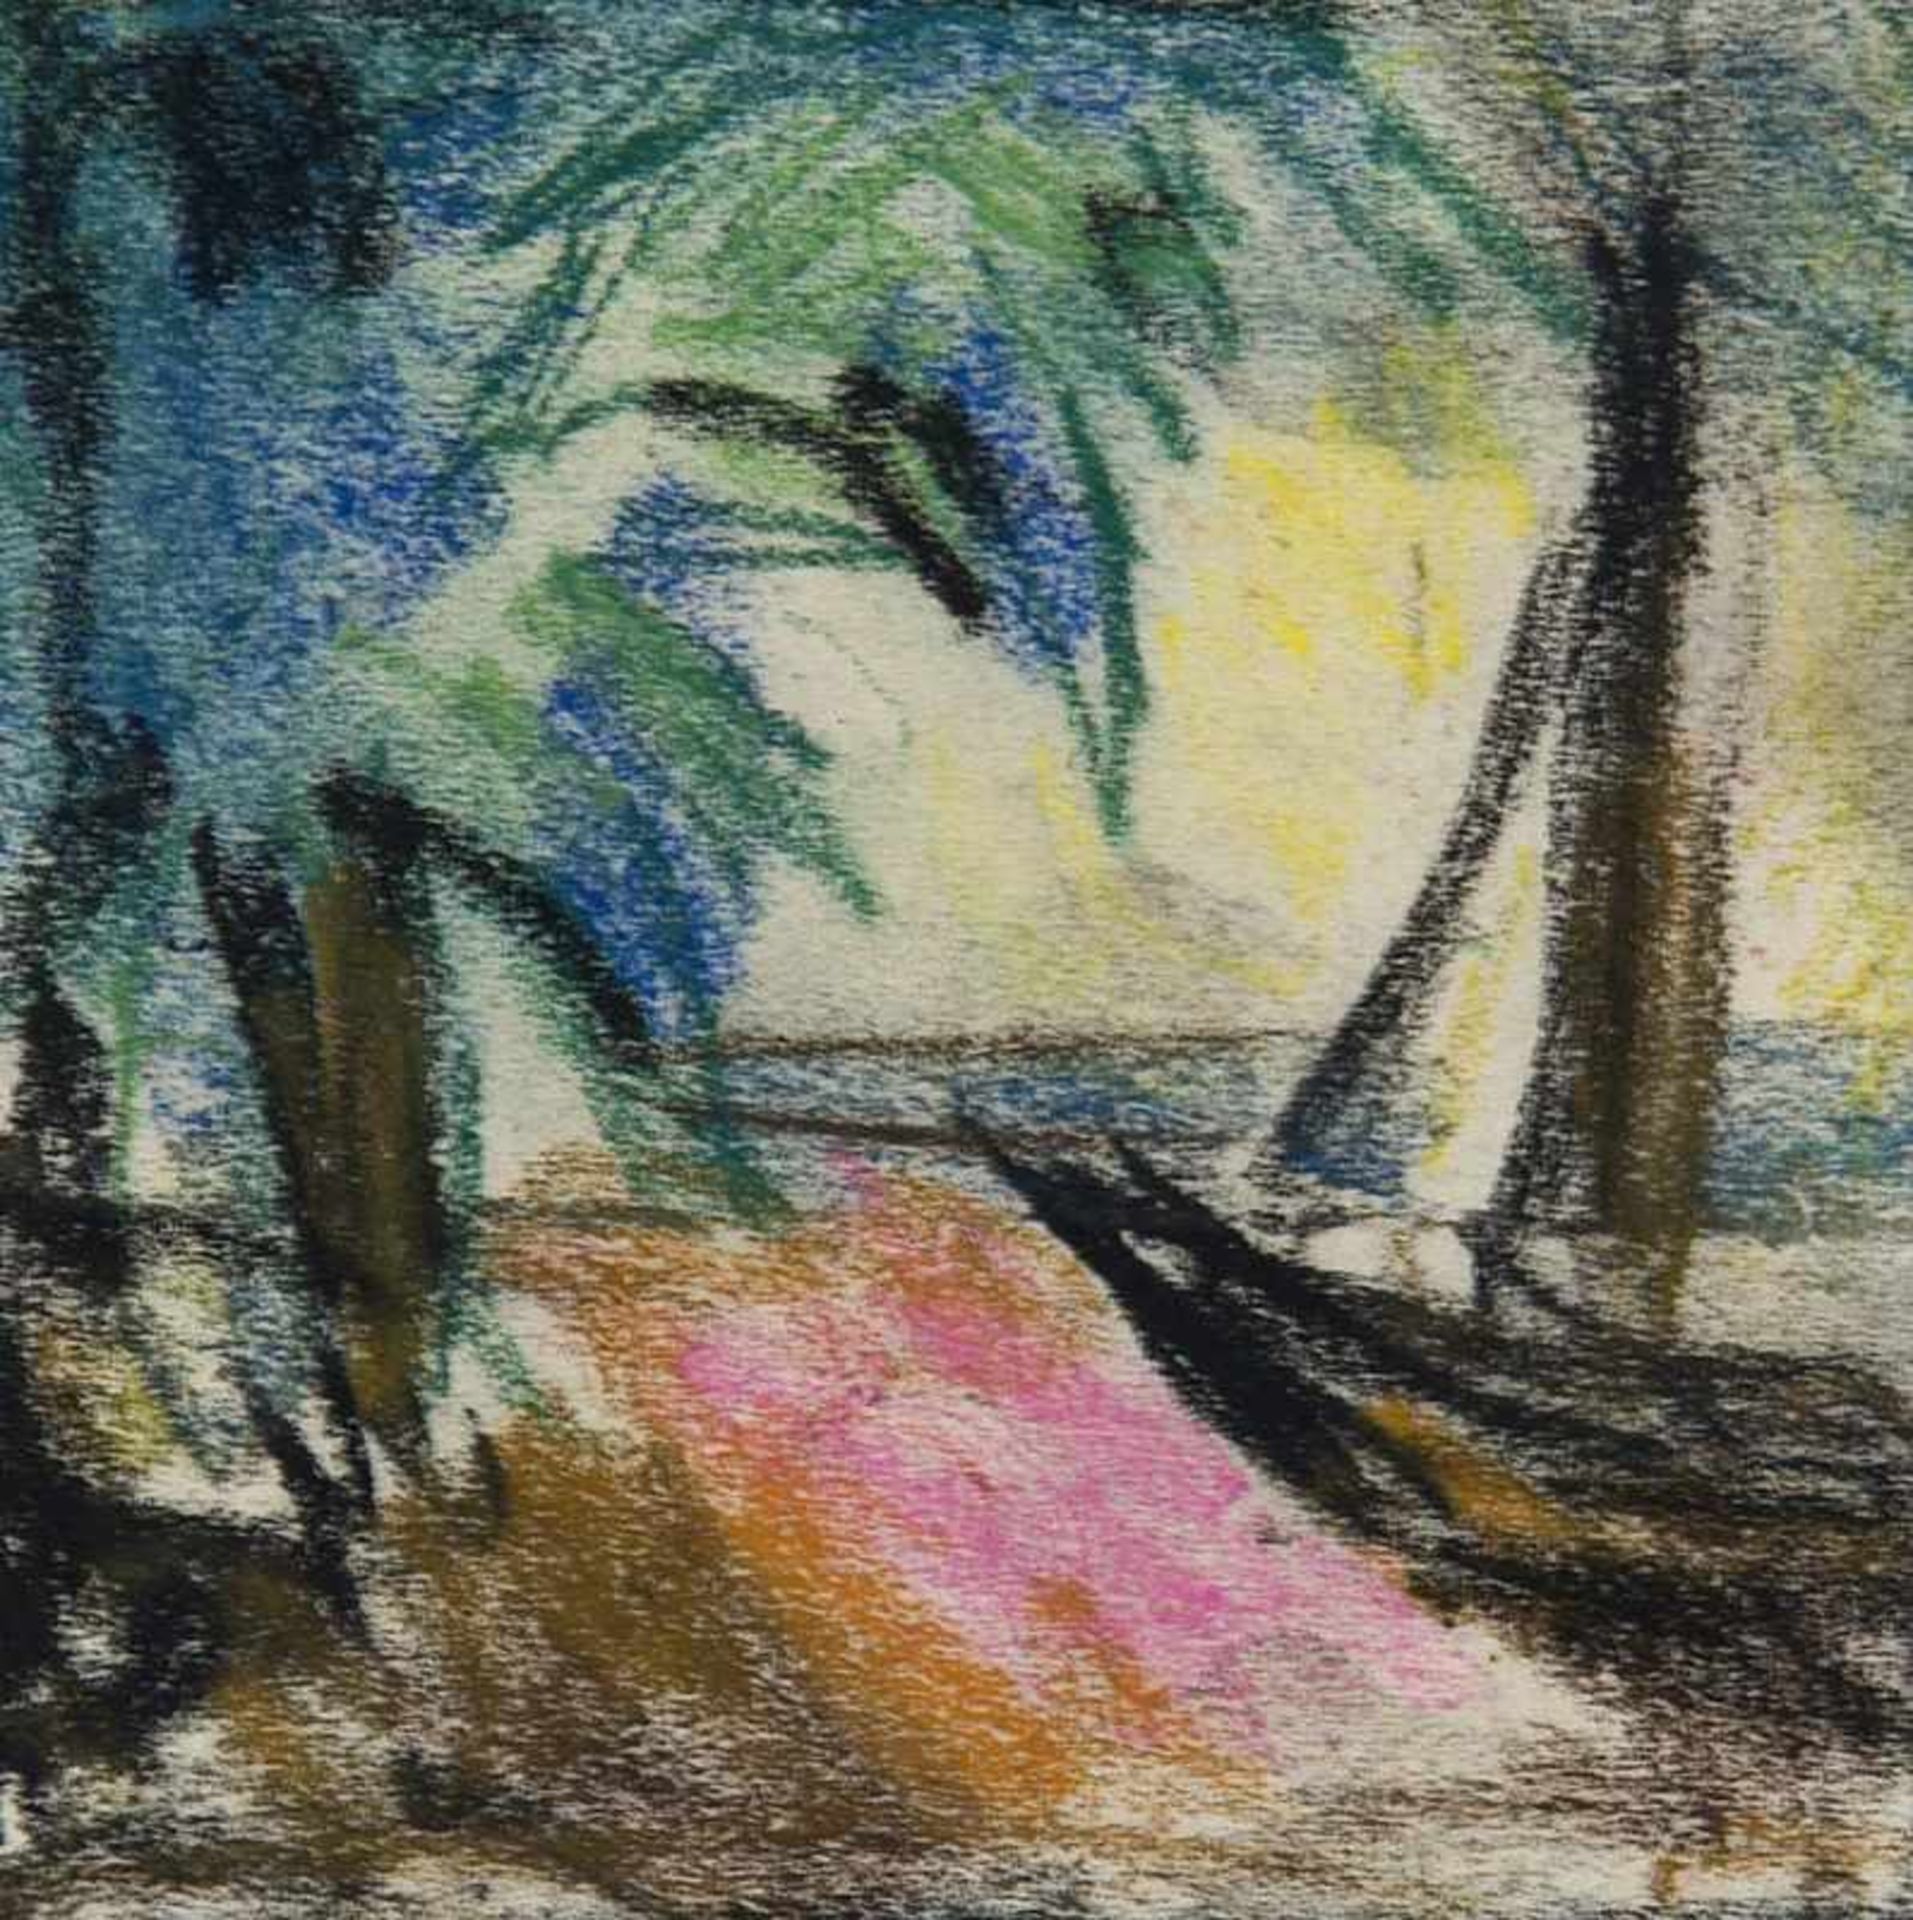 Mueller, Albert. (1884 Schwandorf - 1963 Bremen). Segelboot am Strand unter Palmen. Pastellkreide